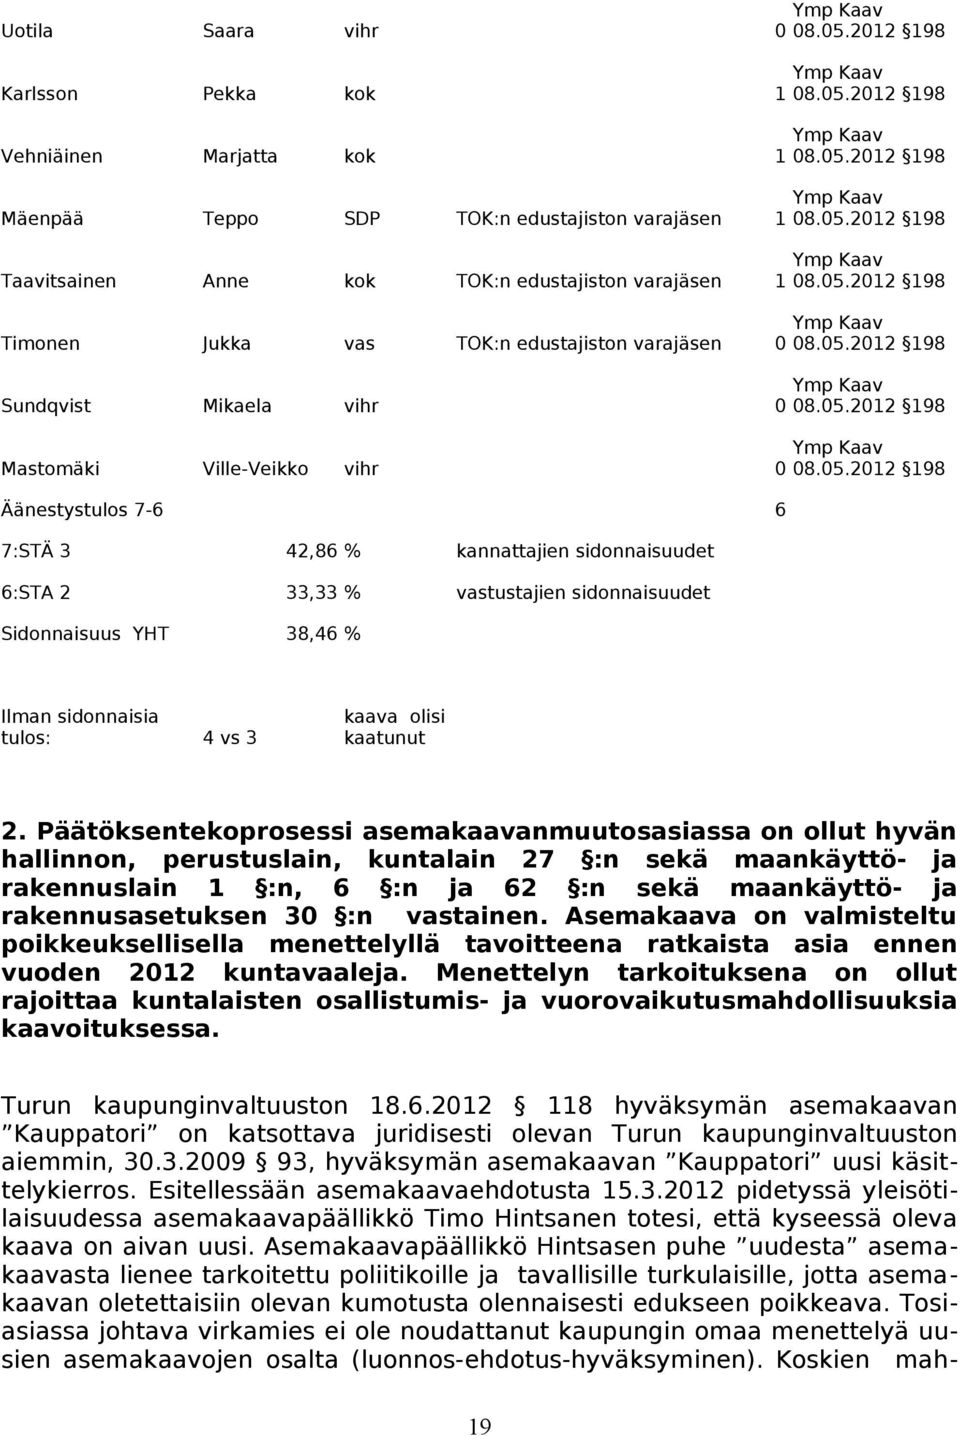 varajäsen 0 Sundqvist Mikaela vihr 0 Mastomäki Ville-Veikko vihr 0 Äänestystulos 7-6 6 7:STÄ 3 42,86 % kannattajien sidonnaisuudet 6:STA 2 33,33 % vastustajien sidonnaisuudet Sidonnaisuus YHT 38,46 %